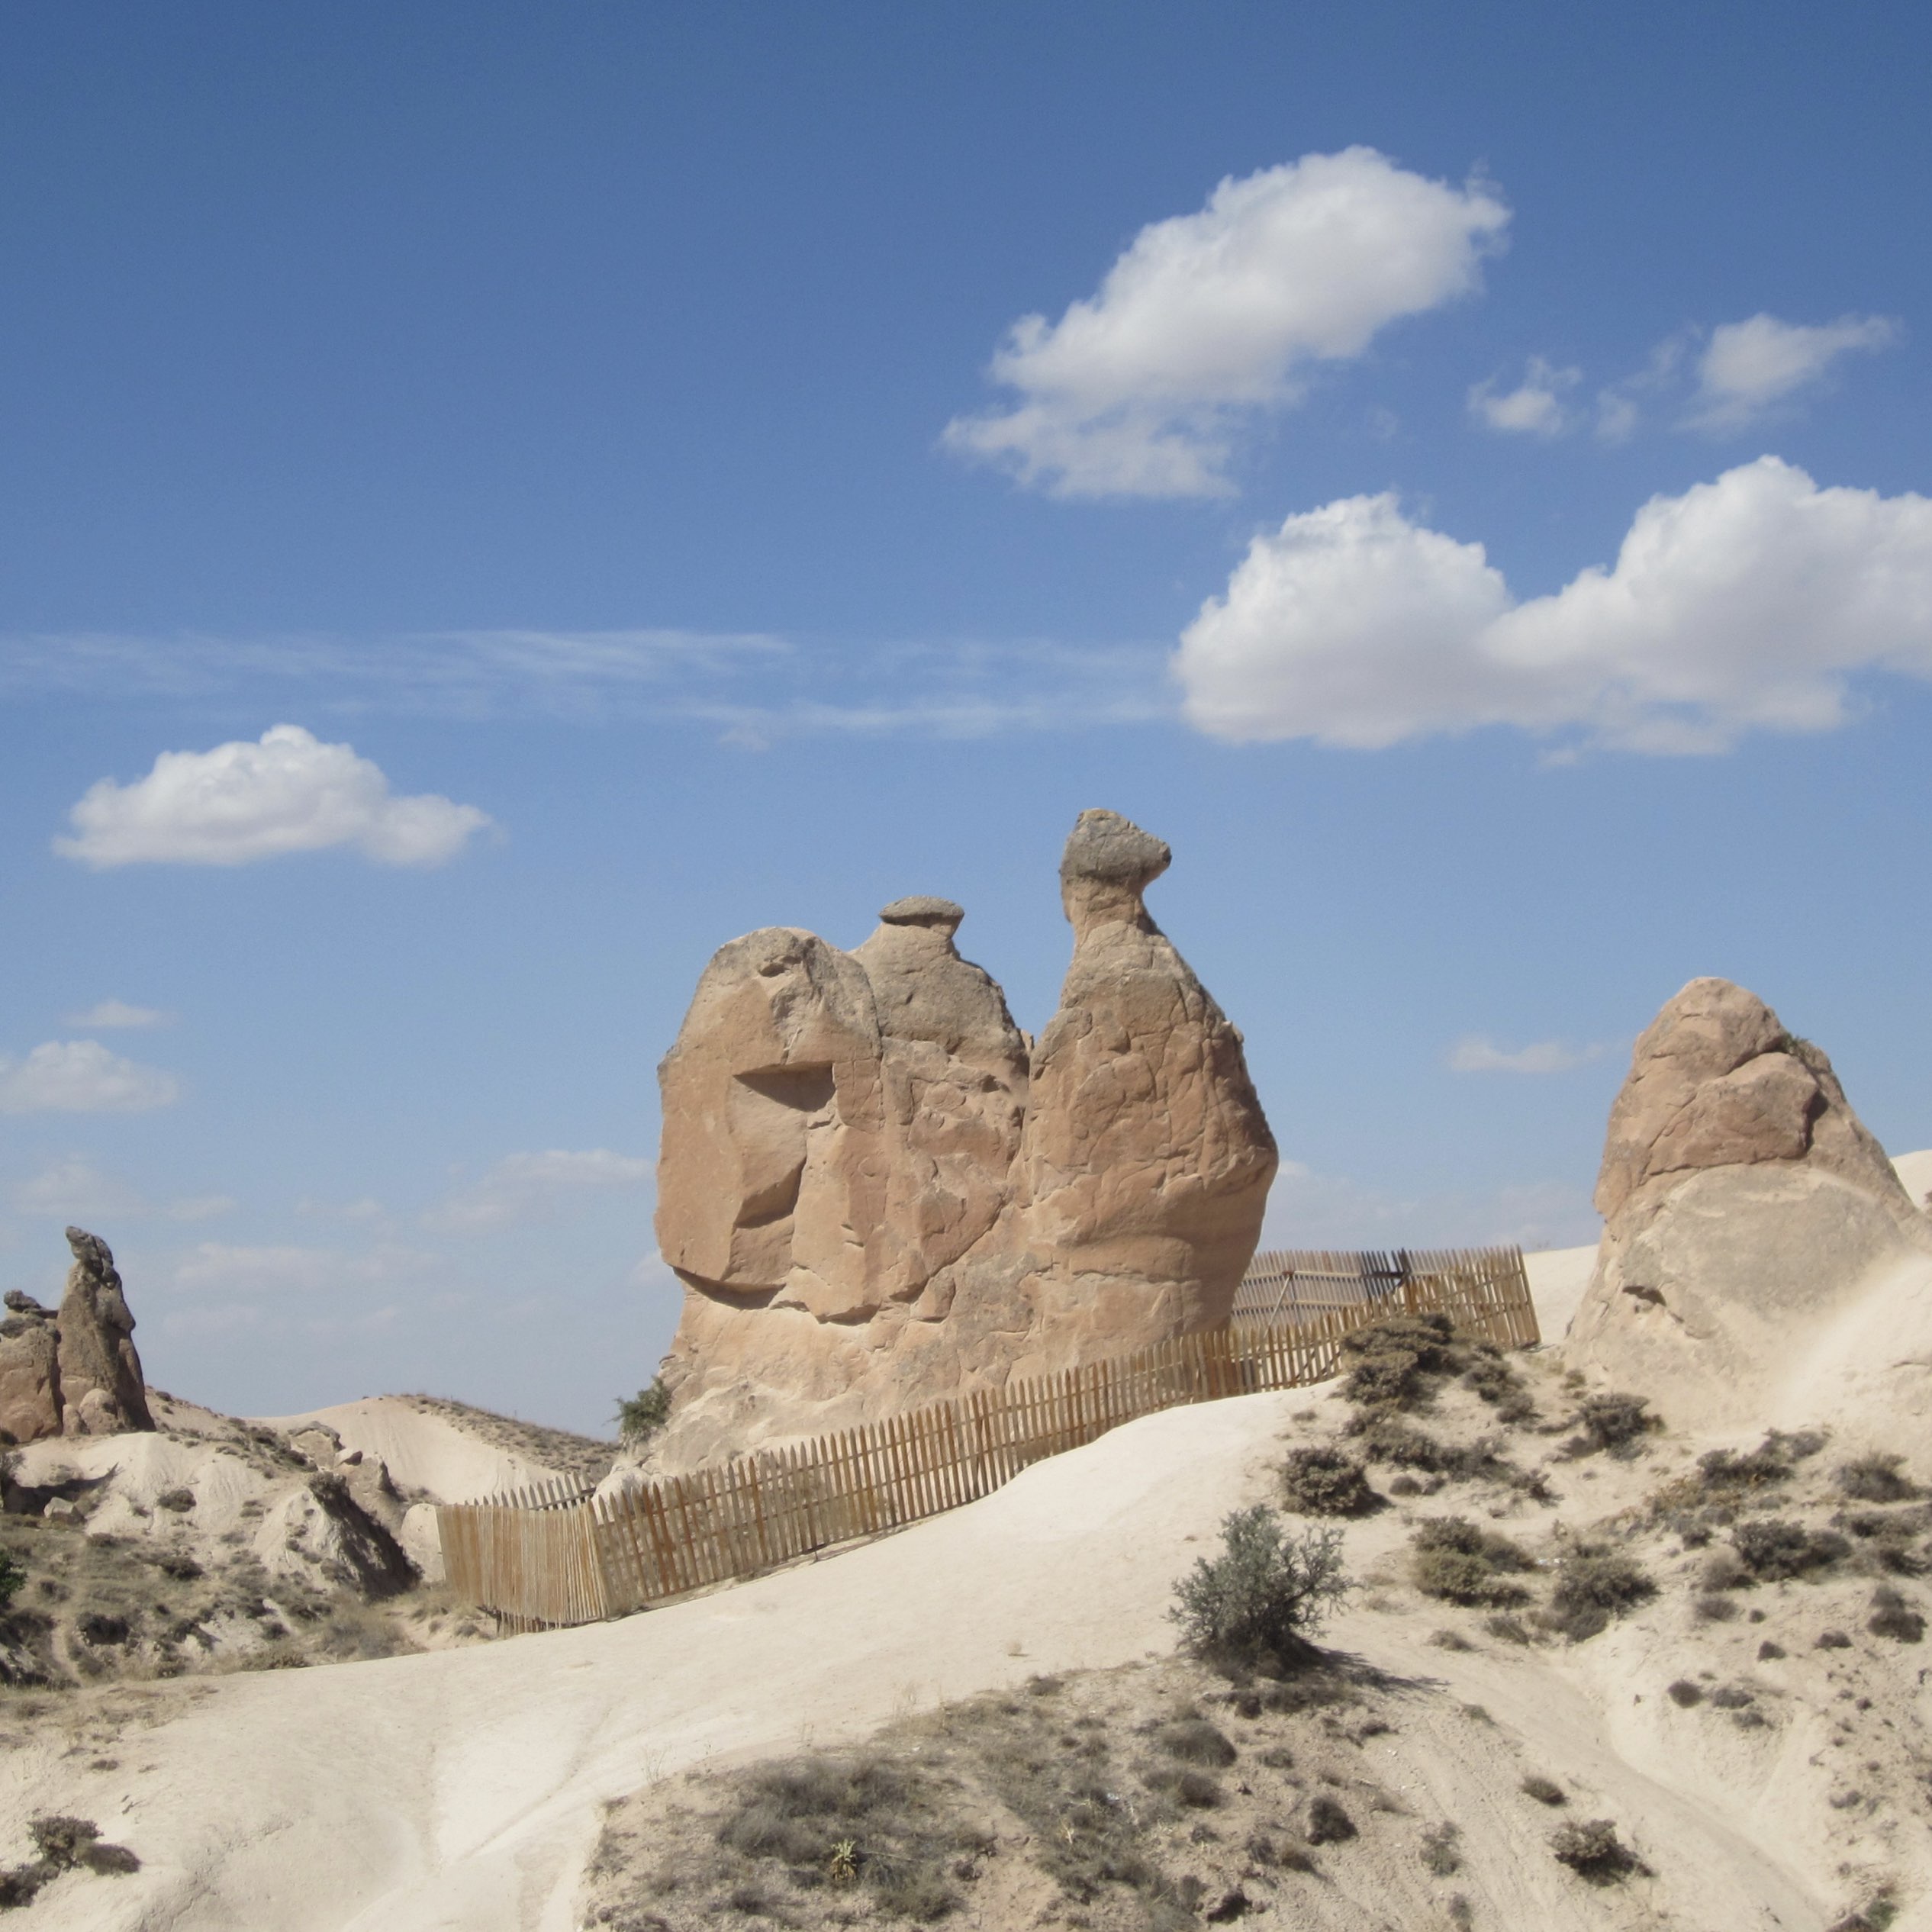 怪石奇石之旅,骆驼石和家庭石